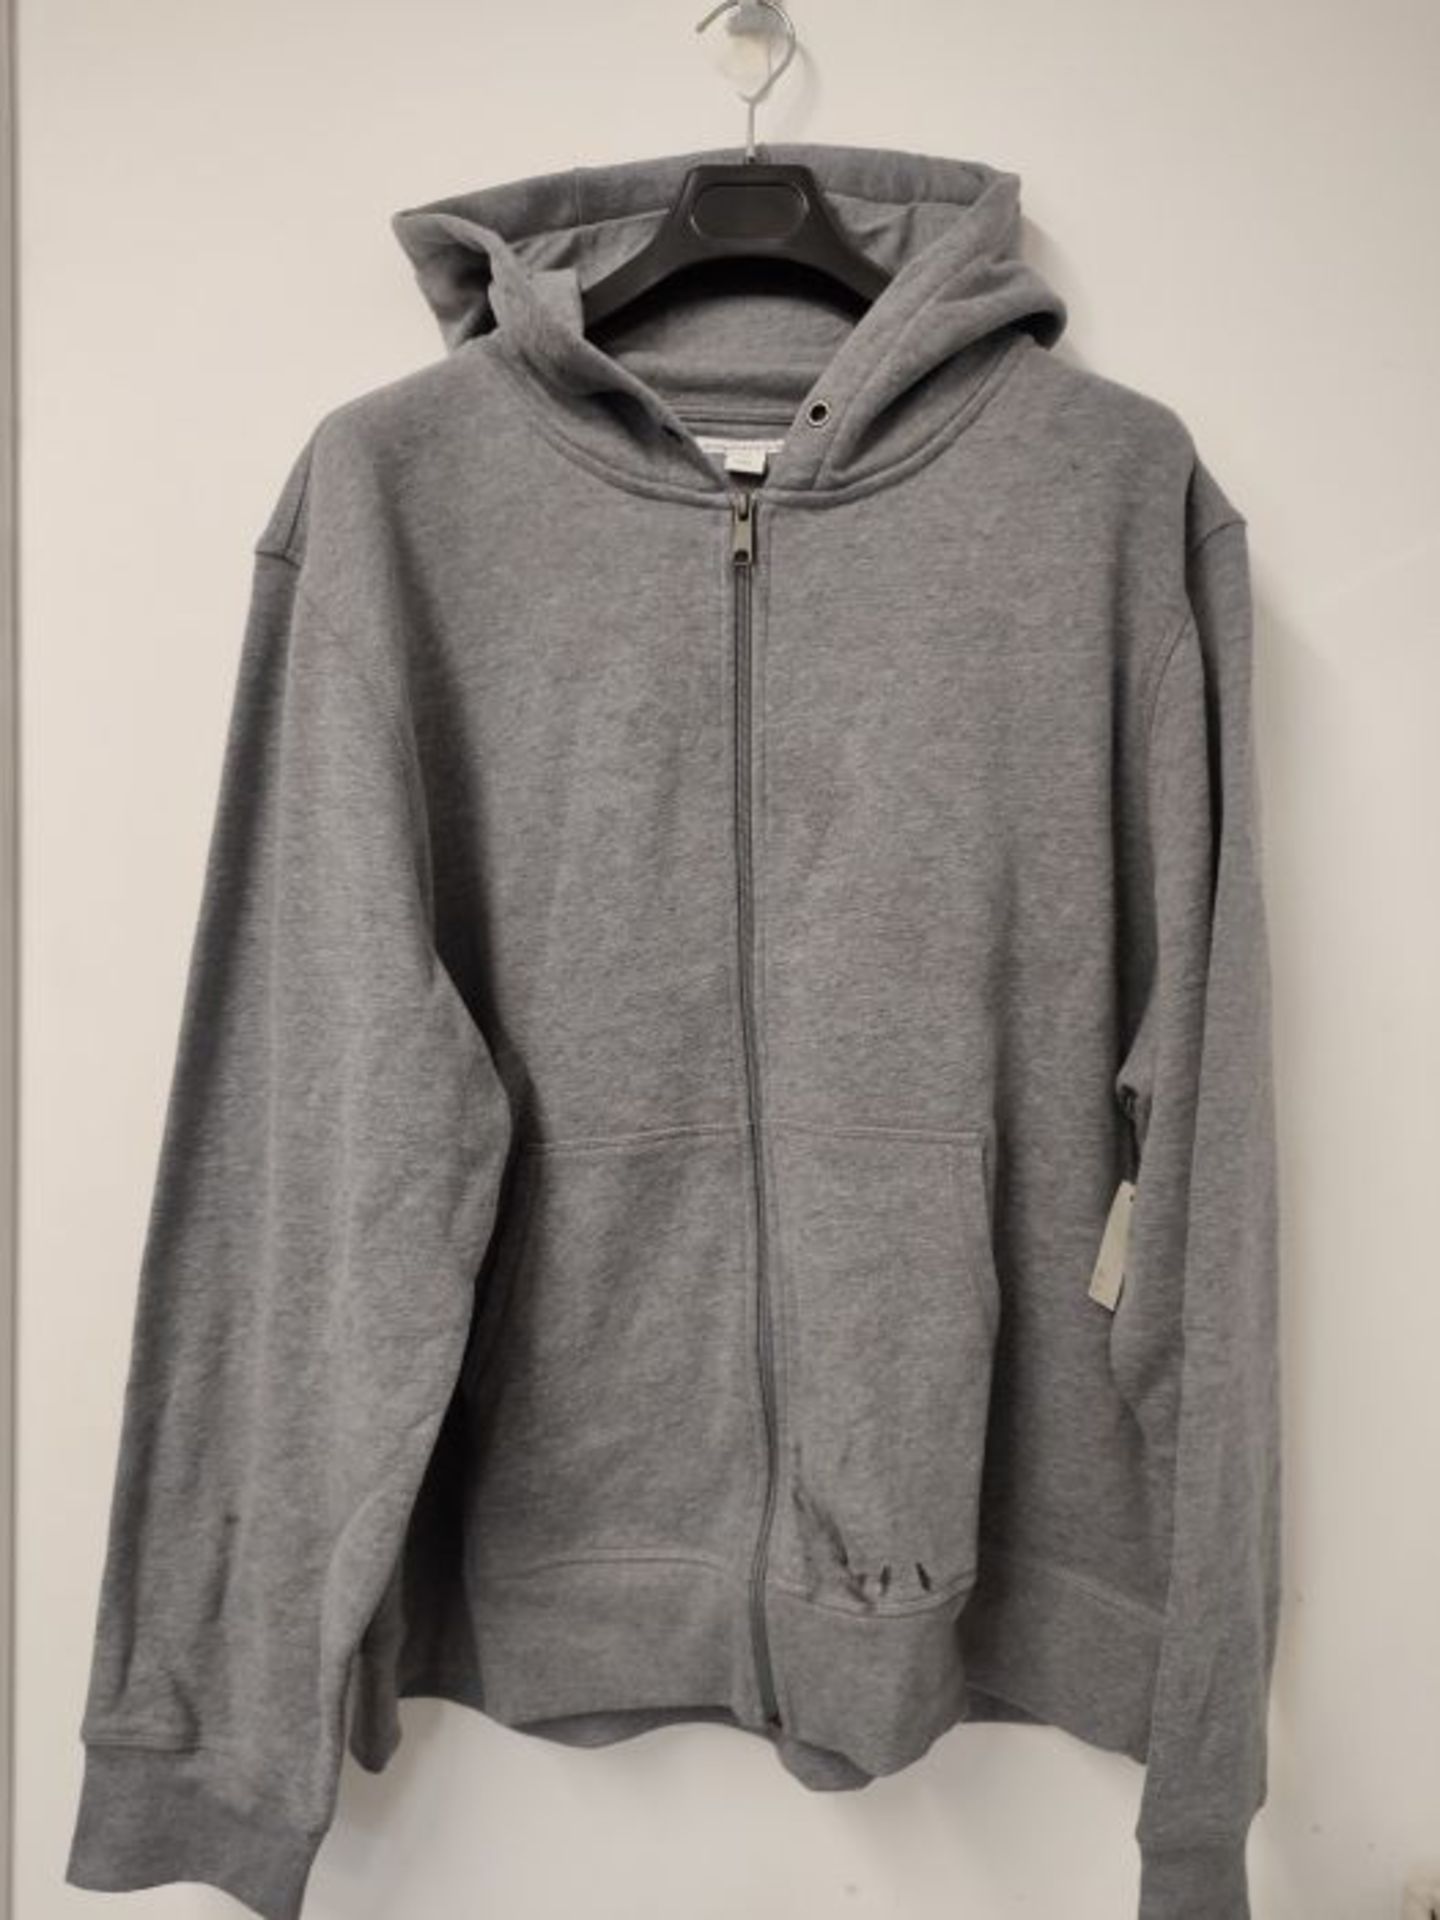 Amazon Essentials Men's Full-Zip Hooded Fleece Sweatshirt, Light Grey Heather, XXL - Image 2 of 2